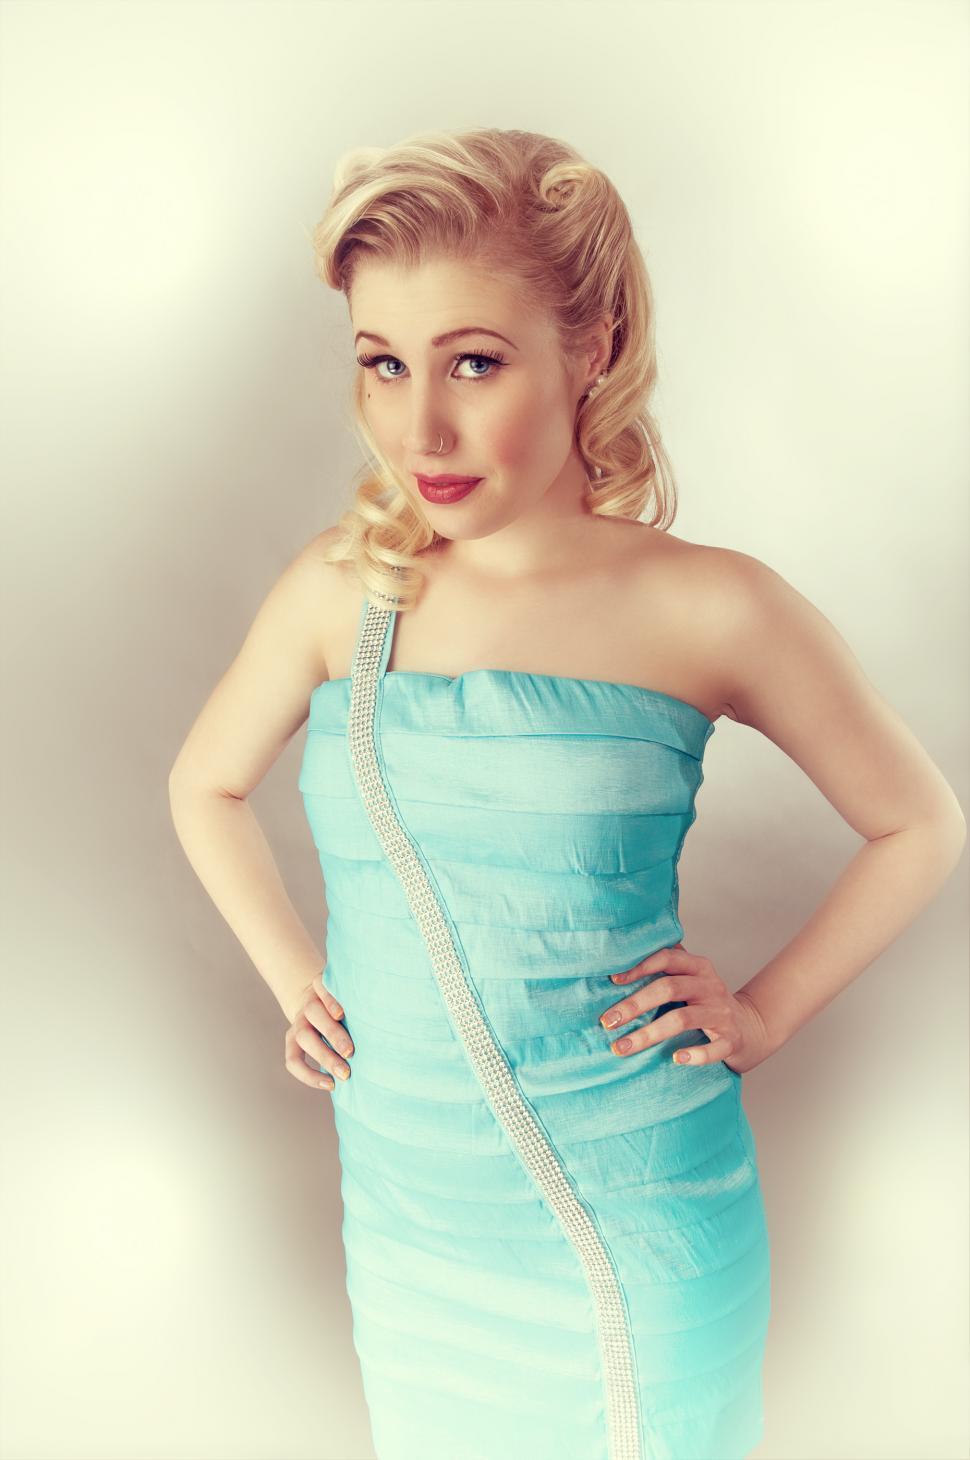 Free Image of Vintage look model in blue dress 